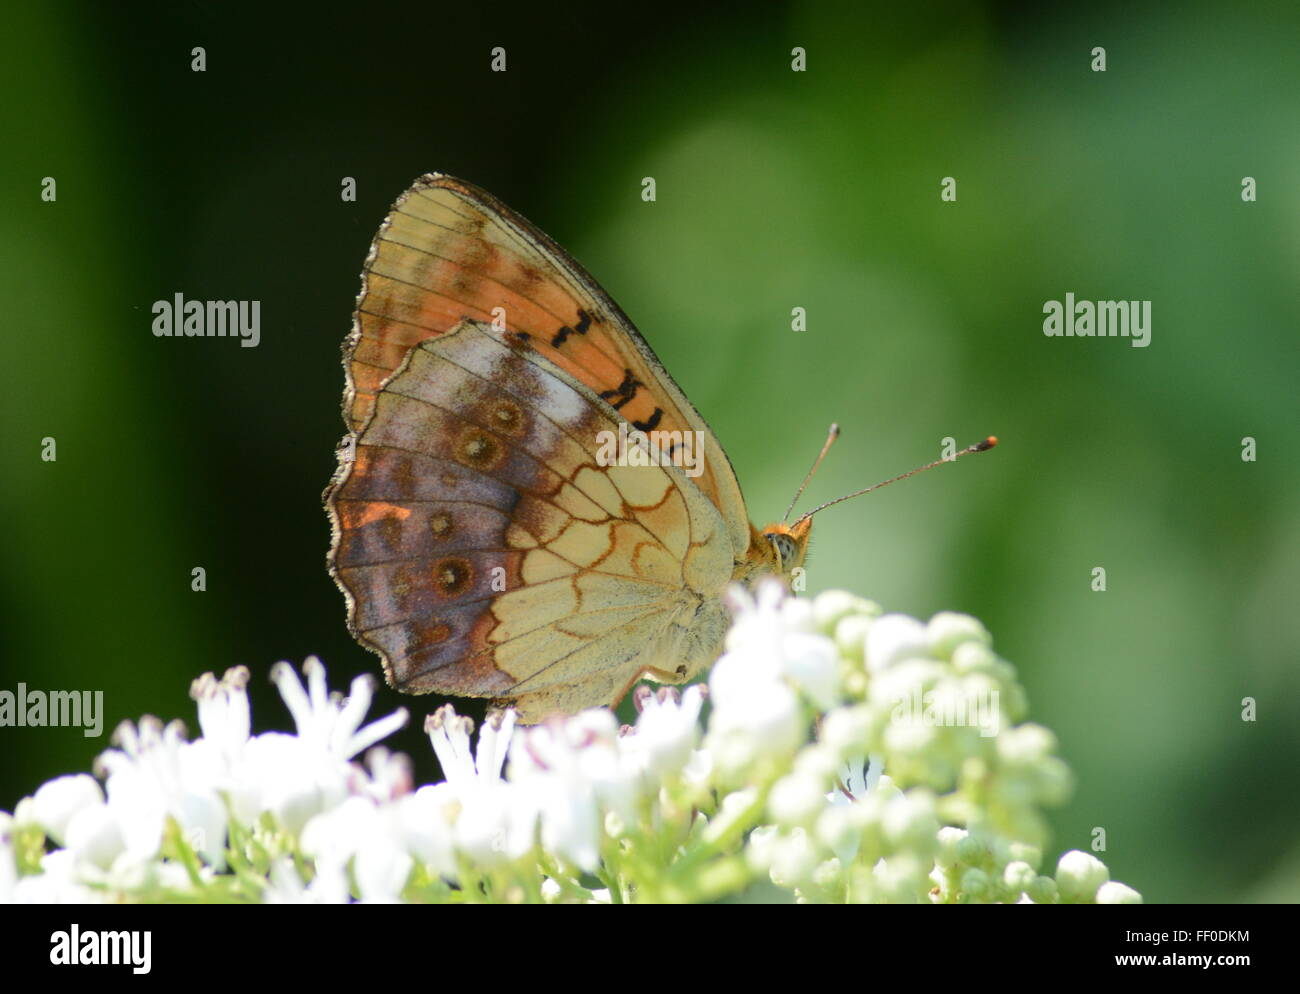 Marbled fritillary butterfly (Brenthis daphne) nectar sur les fleurs dans le Nord de la Grèce Banque D'Images